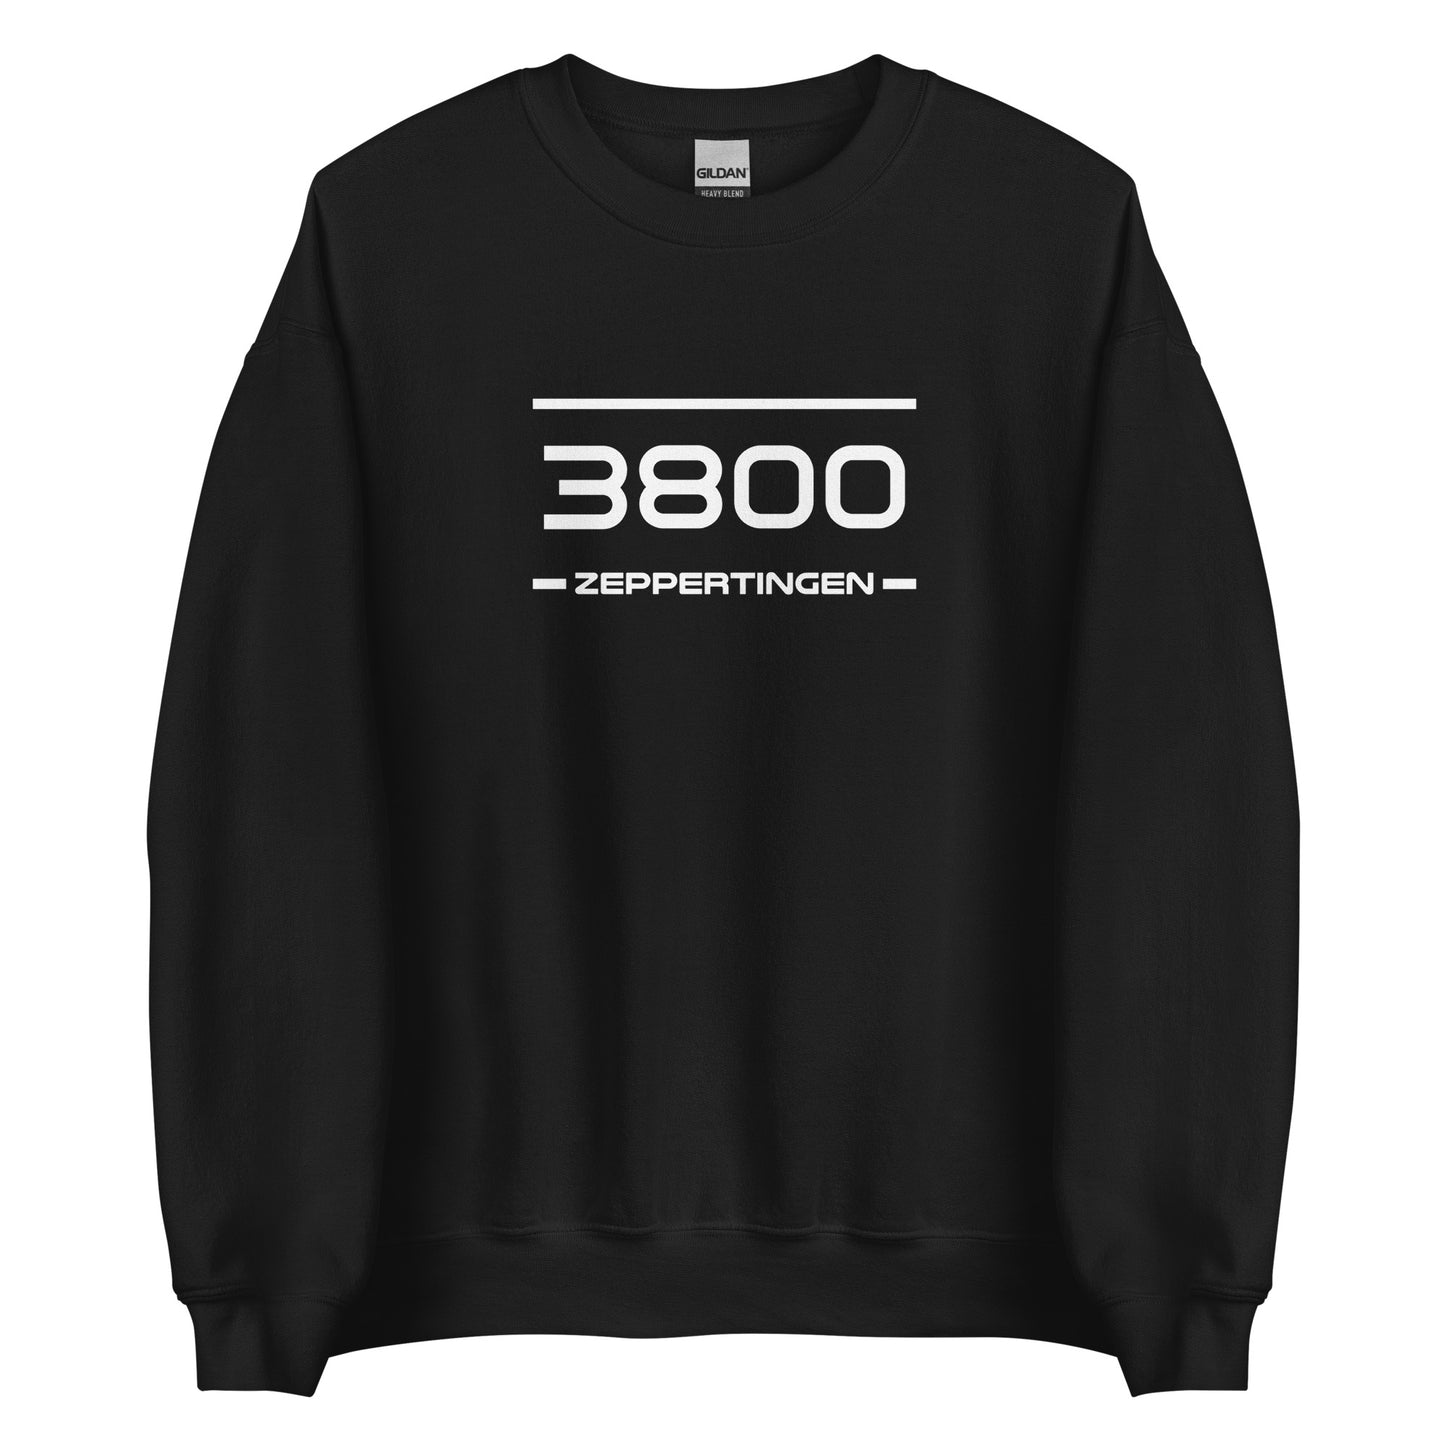 Sweater - 3800 - Zeppertingen (M/V)